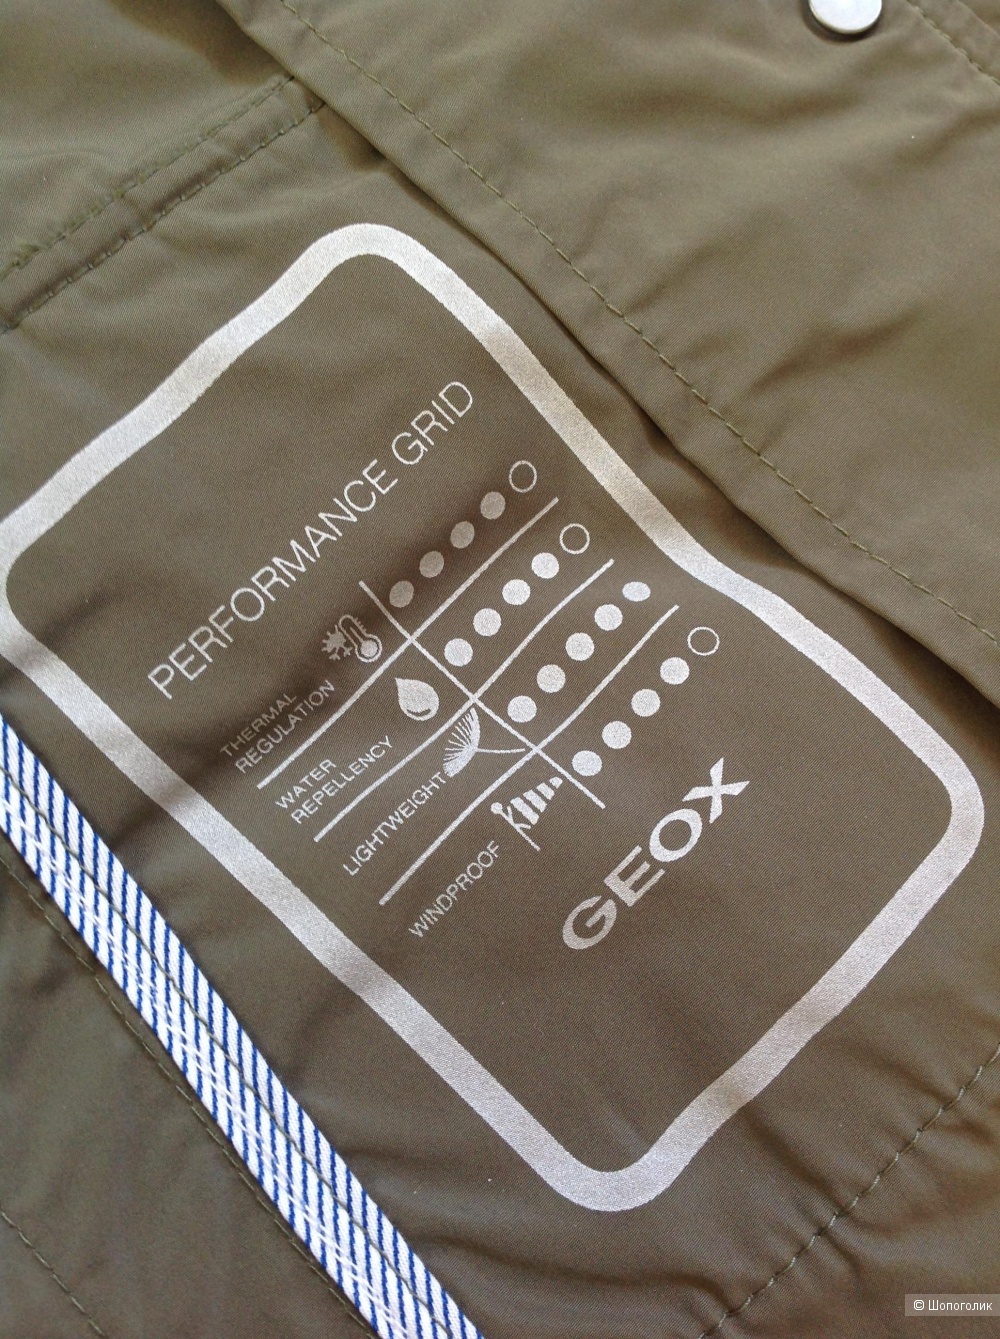 Куртка ветровка GEOX, размер 46 IT, на 46-48-50